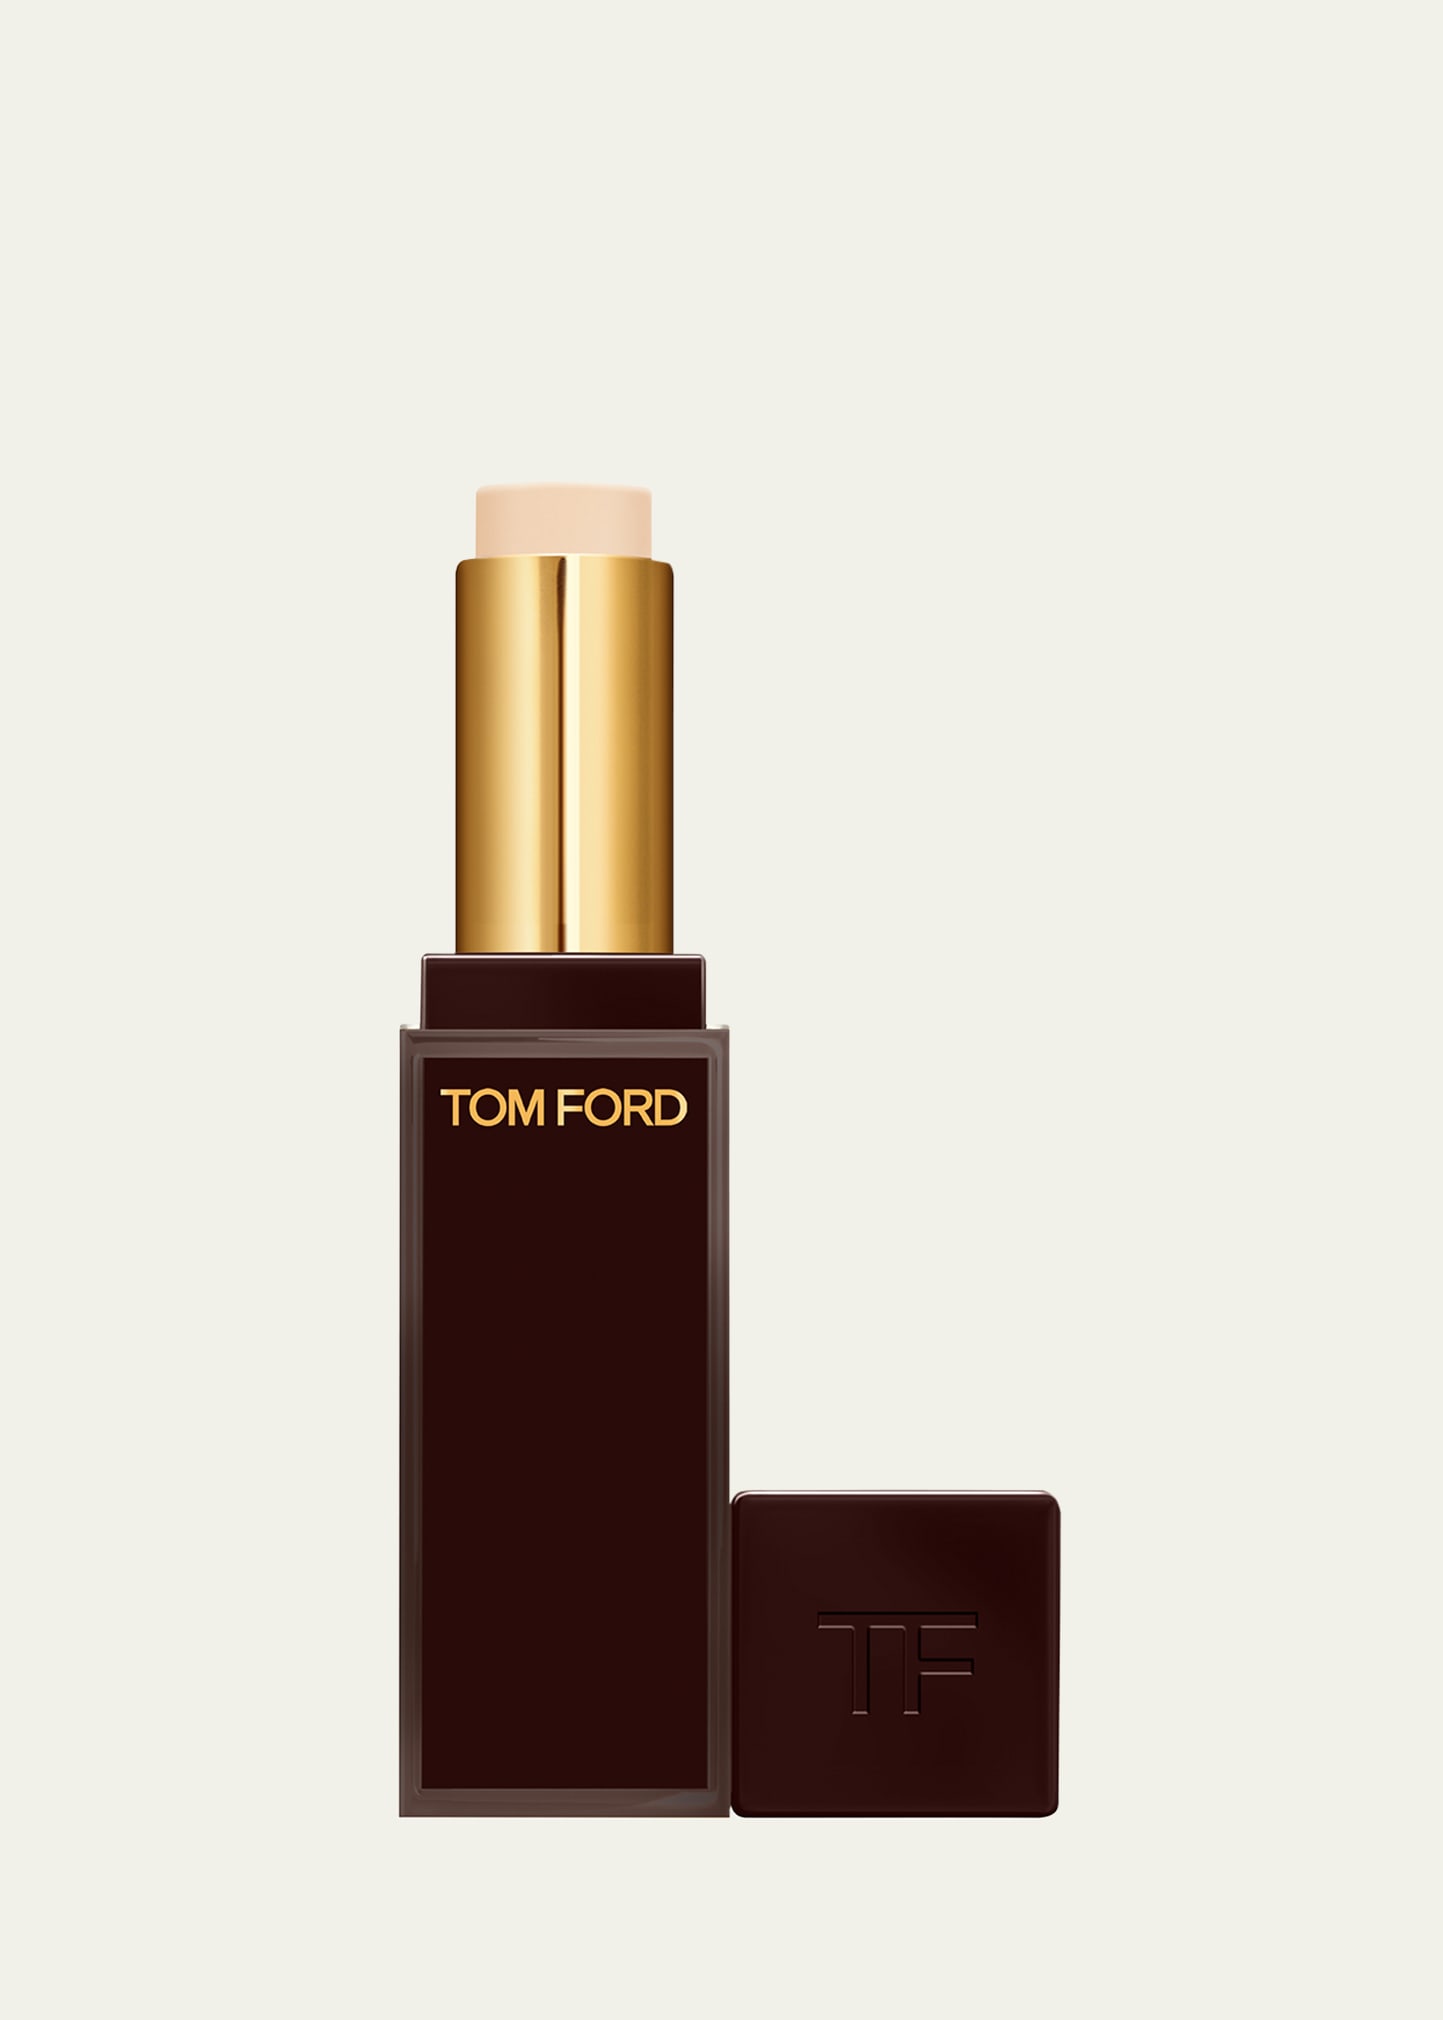 Tom Ford Traceless Soft Matte Concealer, 0.14 Oz. In 010n0 Blanc